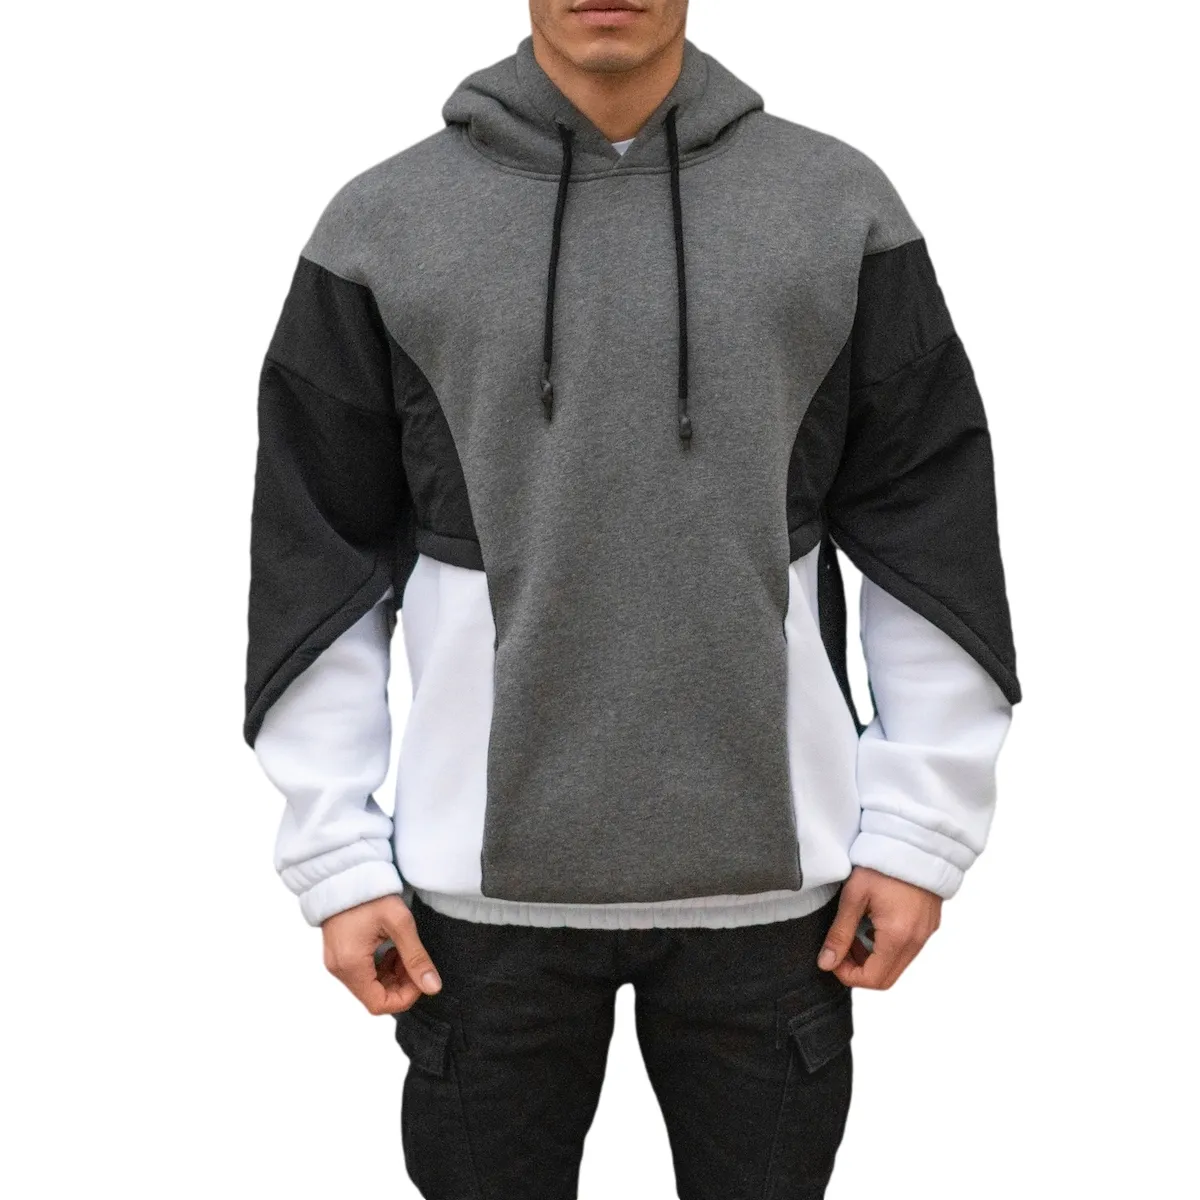 Boy % 100% pamuk erkek blok paraşüt dokulu kazak hoodie yeni stil iyi en iyi fiyat toptan teklif trend 2020